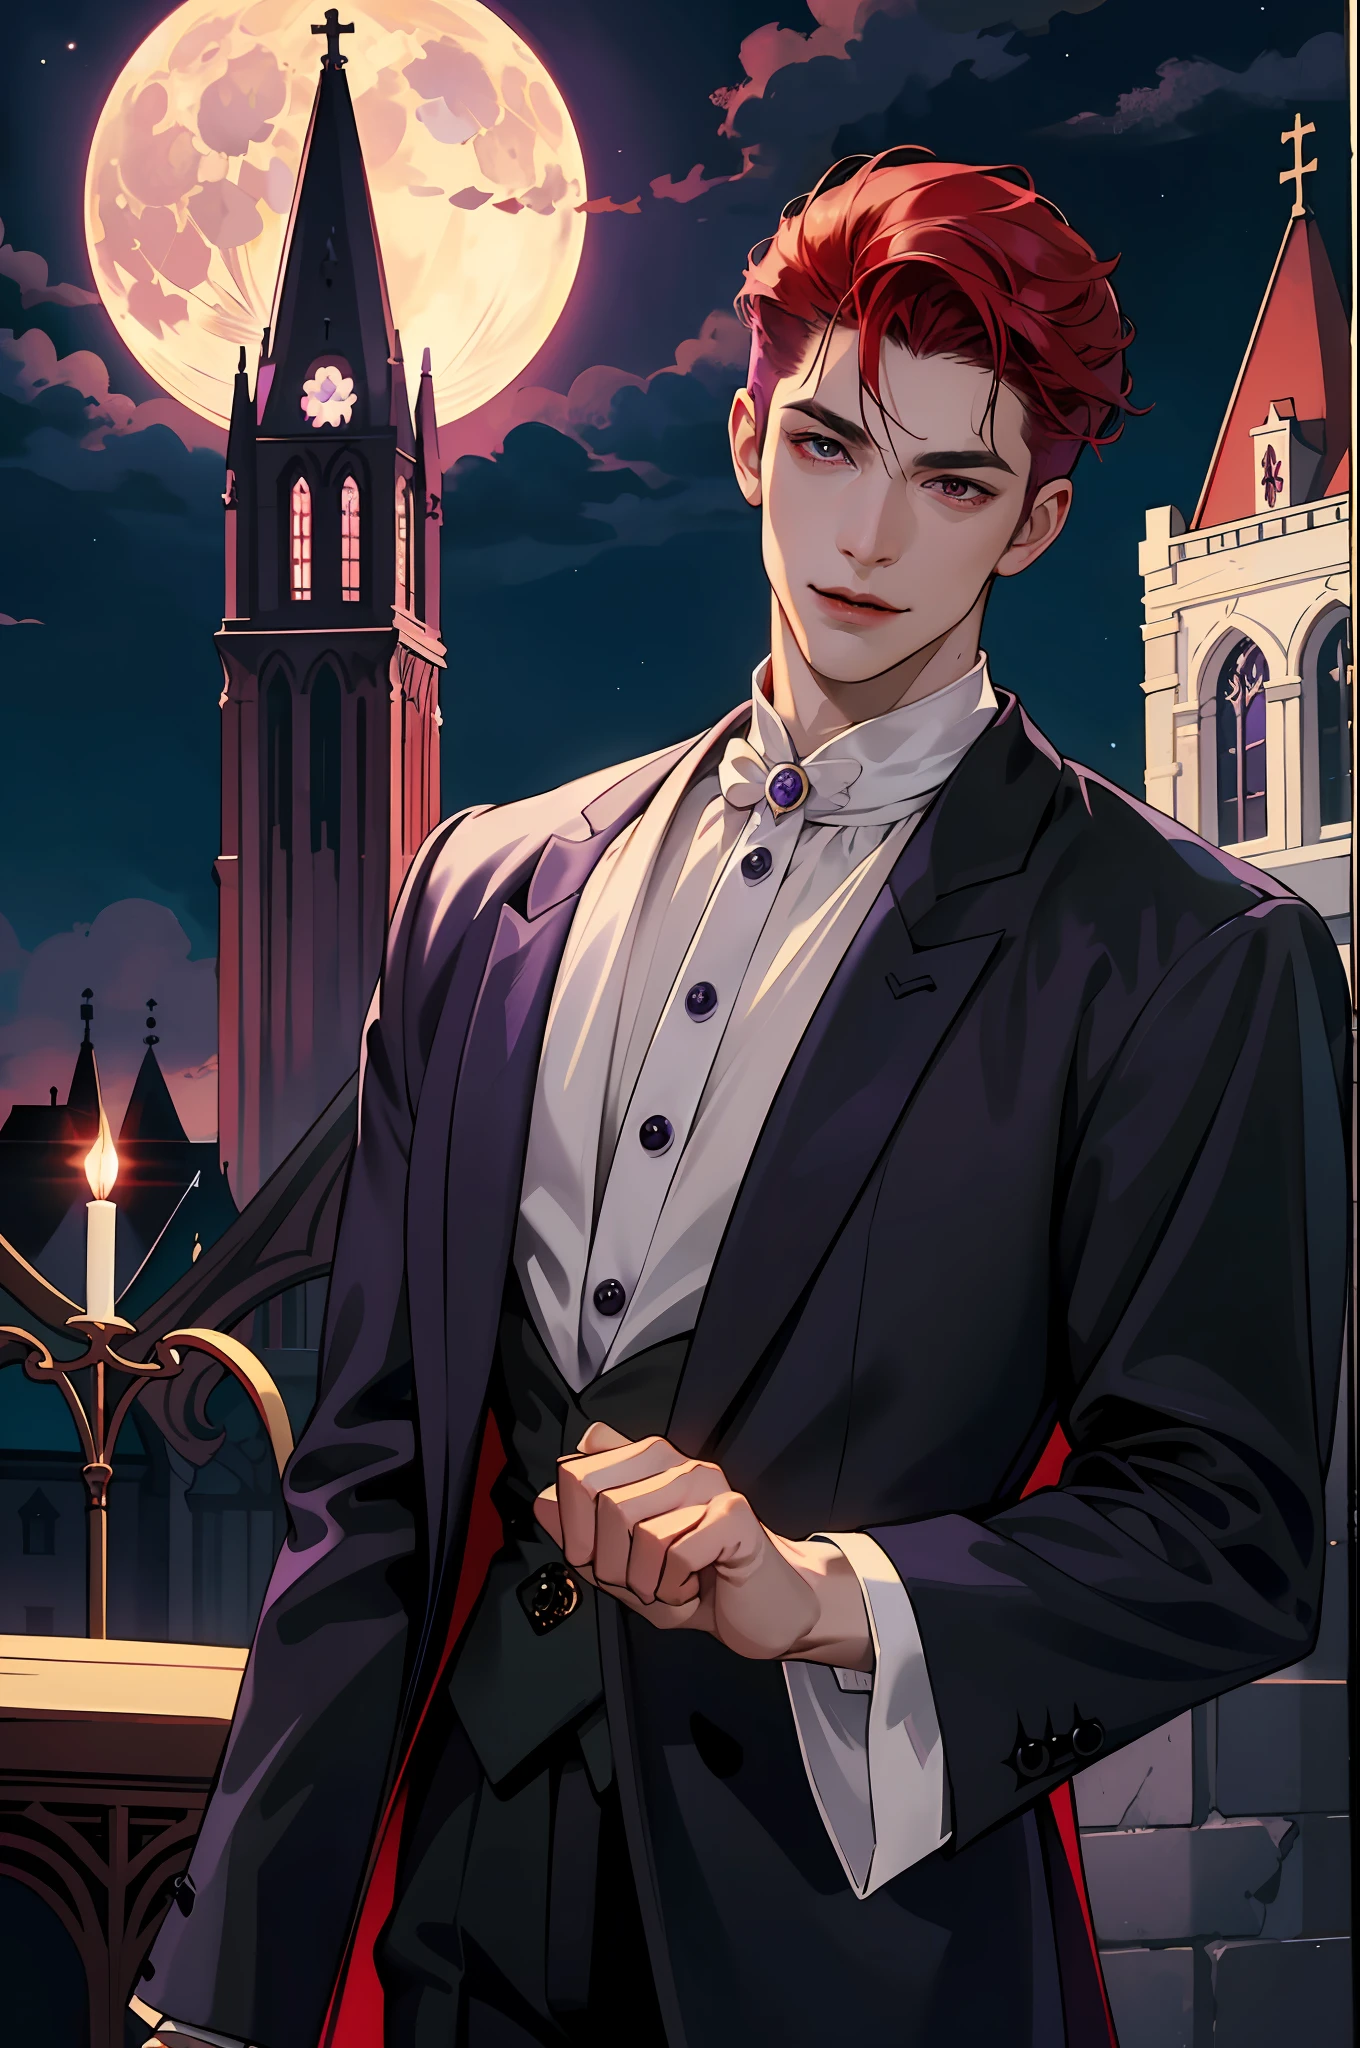 這才是真正的吸血鬼的樣子! 古董吸血鬼衣服, 優雅的, 紳士風度. 他微笑著友善, 他的紅髮很鮮豔, 他的紅眼睛映襯著他完美的皮膚. 背景是紫色的教堂窗戶, 背後反射月光. 這一切都在美麗而黑暗的燈光下, 這讓它看起來很神奇。 (高品質: 1.2, 教堂在晚上: 1.5, 古董吸血鬼服裝: 1.4) (((晚上))) (挑釁之光, 神秘的黑暗) (((紫月))) 輪廓分明的臉型) 完美的手)